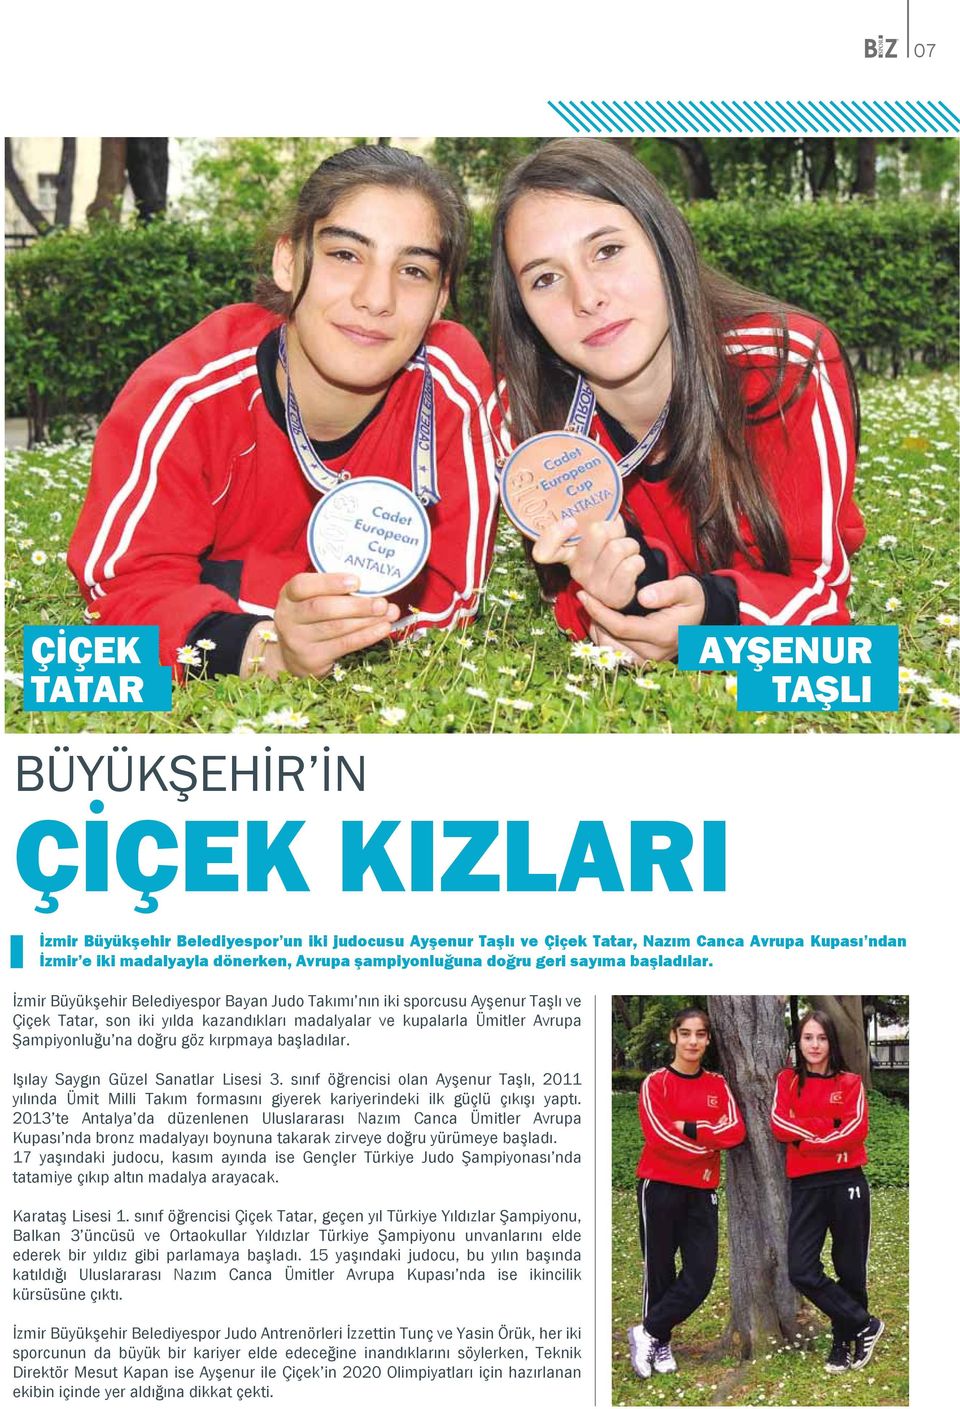 İzmir Büyükşehir Belediyespor Bayan Judo Takımı nın iki sporcusu Ayşenur Taşlı ve Çiçek Tatar, son iki yılda kazandıkları madalyalar ve kupalarla Ümitler Avrupa Şampiyonluğu na doğru göz kırpmaya